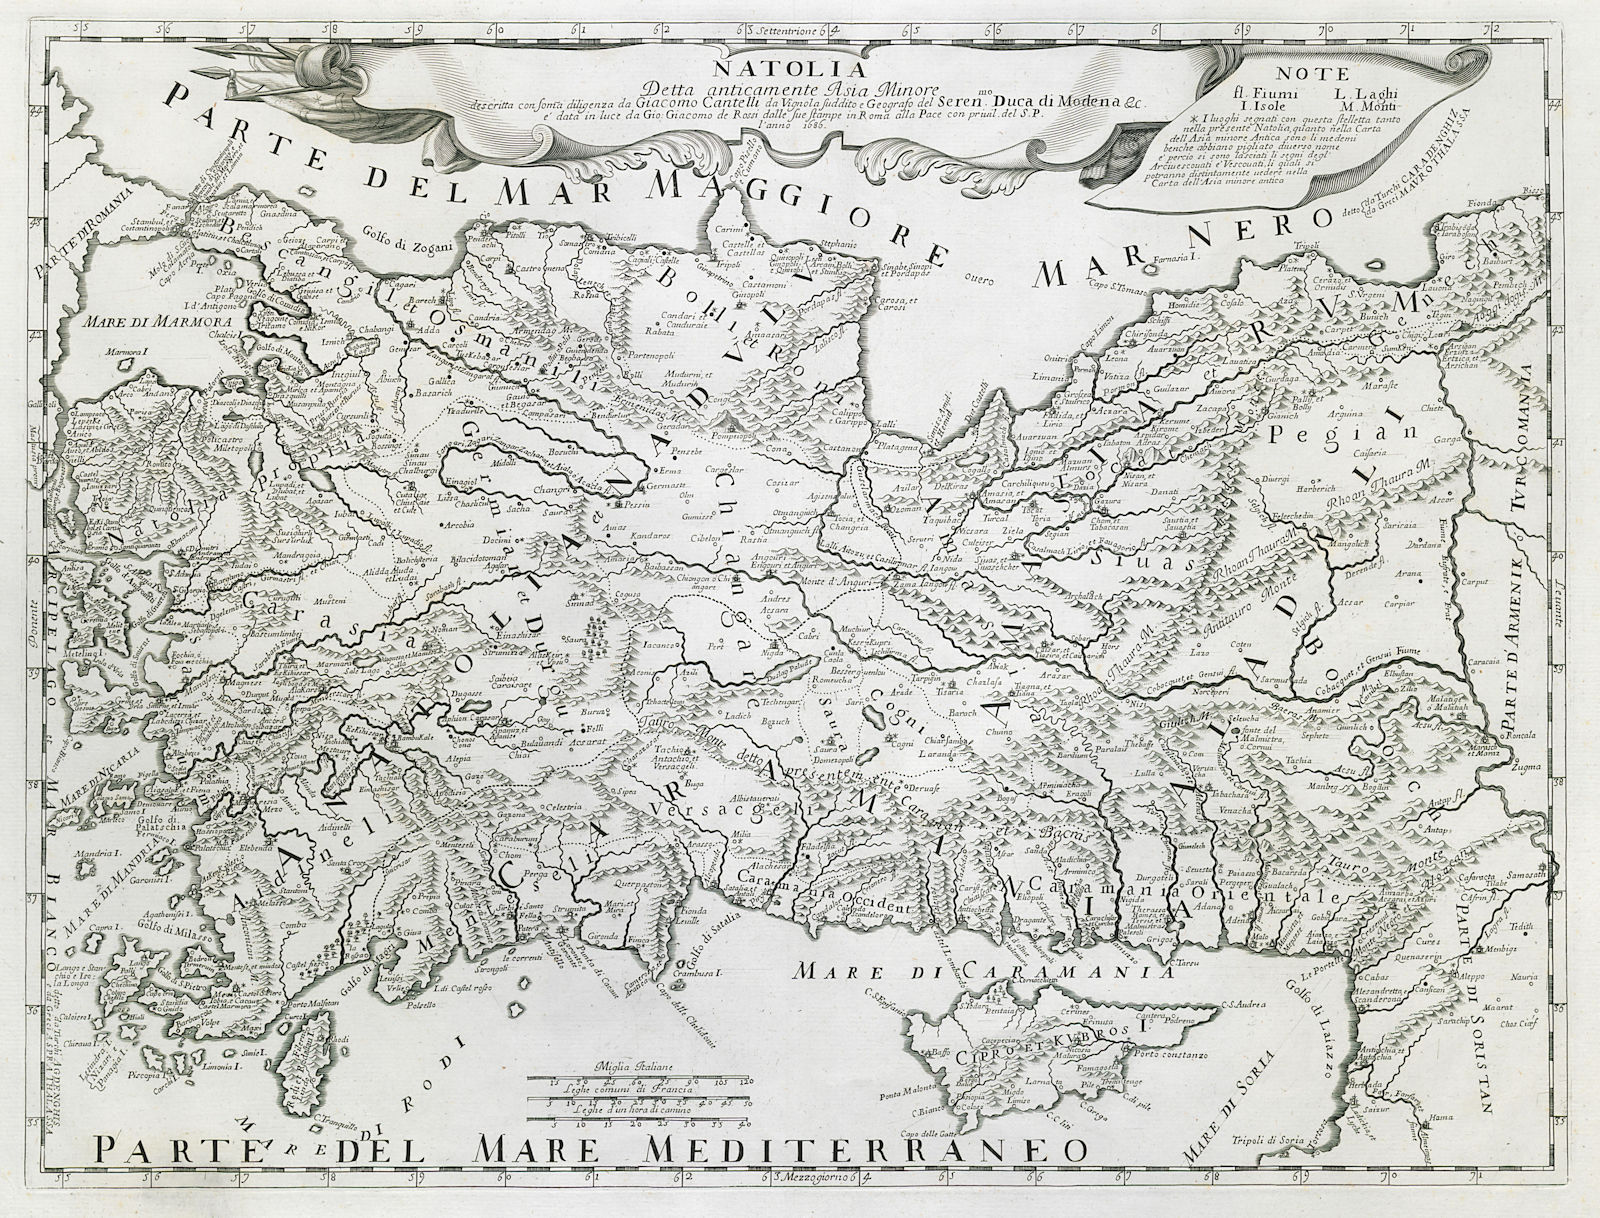 Associate Product Natolia detta anticamente Asia Minore. Turkey & Cyprus ROSSI / CANTELLI 1686 map